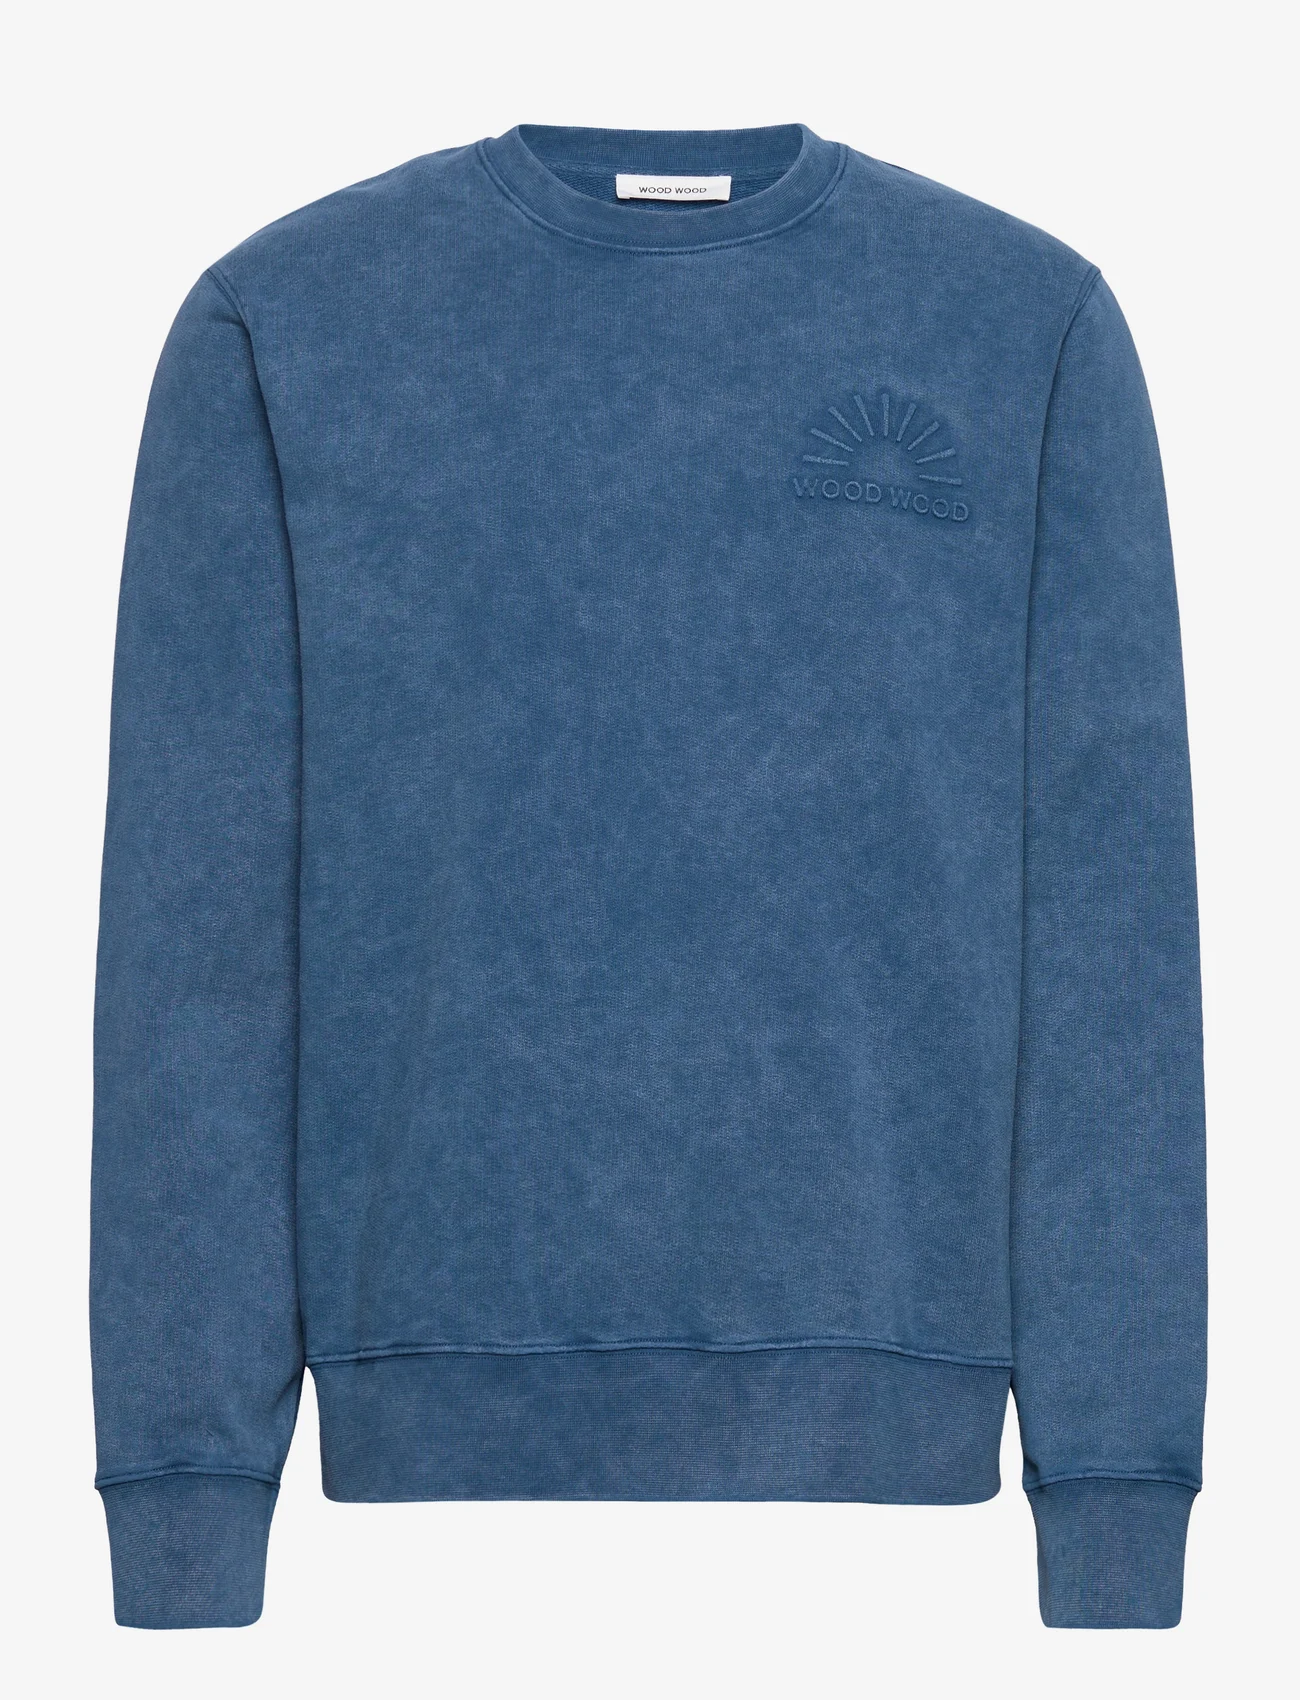 Wood Wood - Hugh embossed sweatshirt - hoodies - dark blue - 0